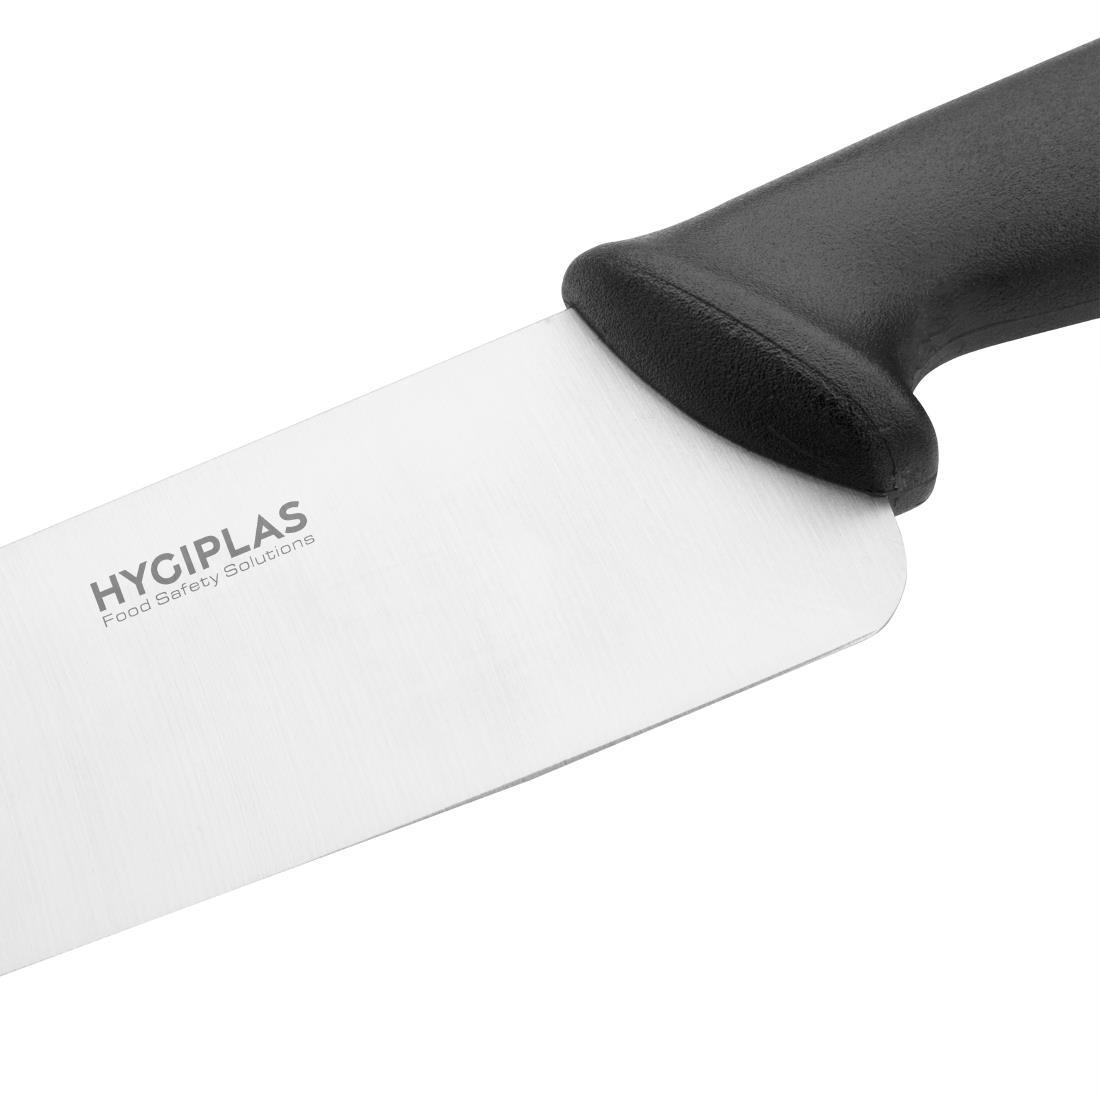 Hygiplas Chef Knife Black 25.5cm - C264  - 3